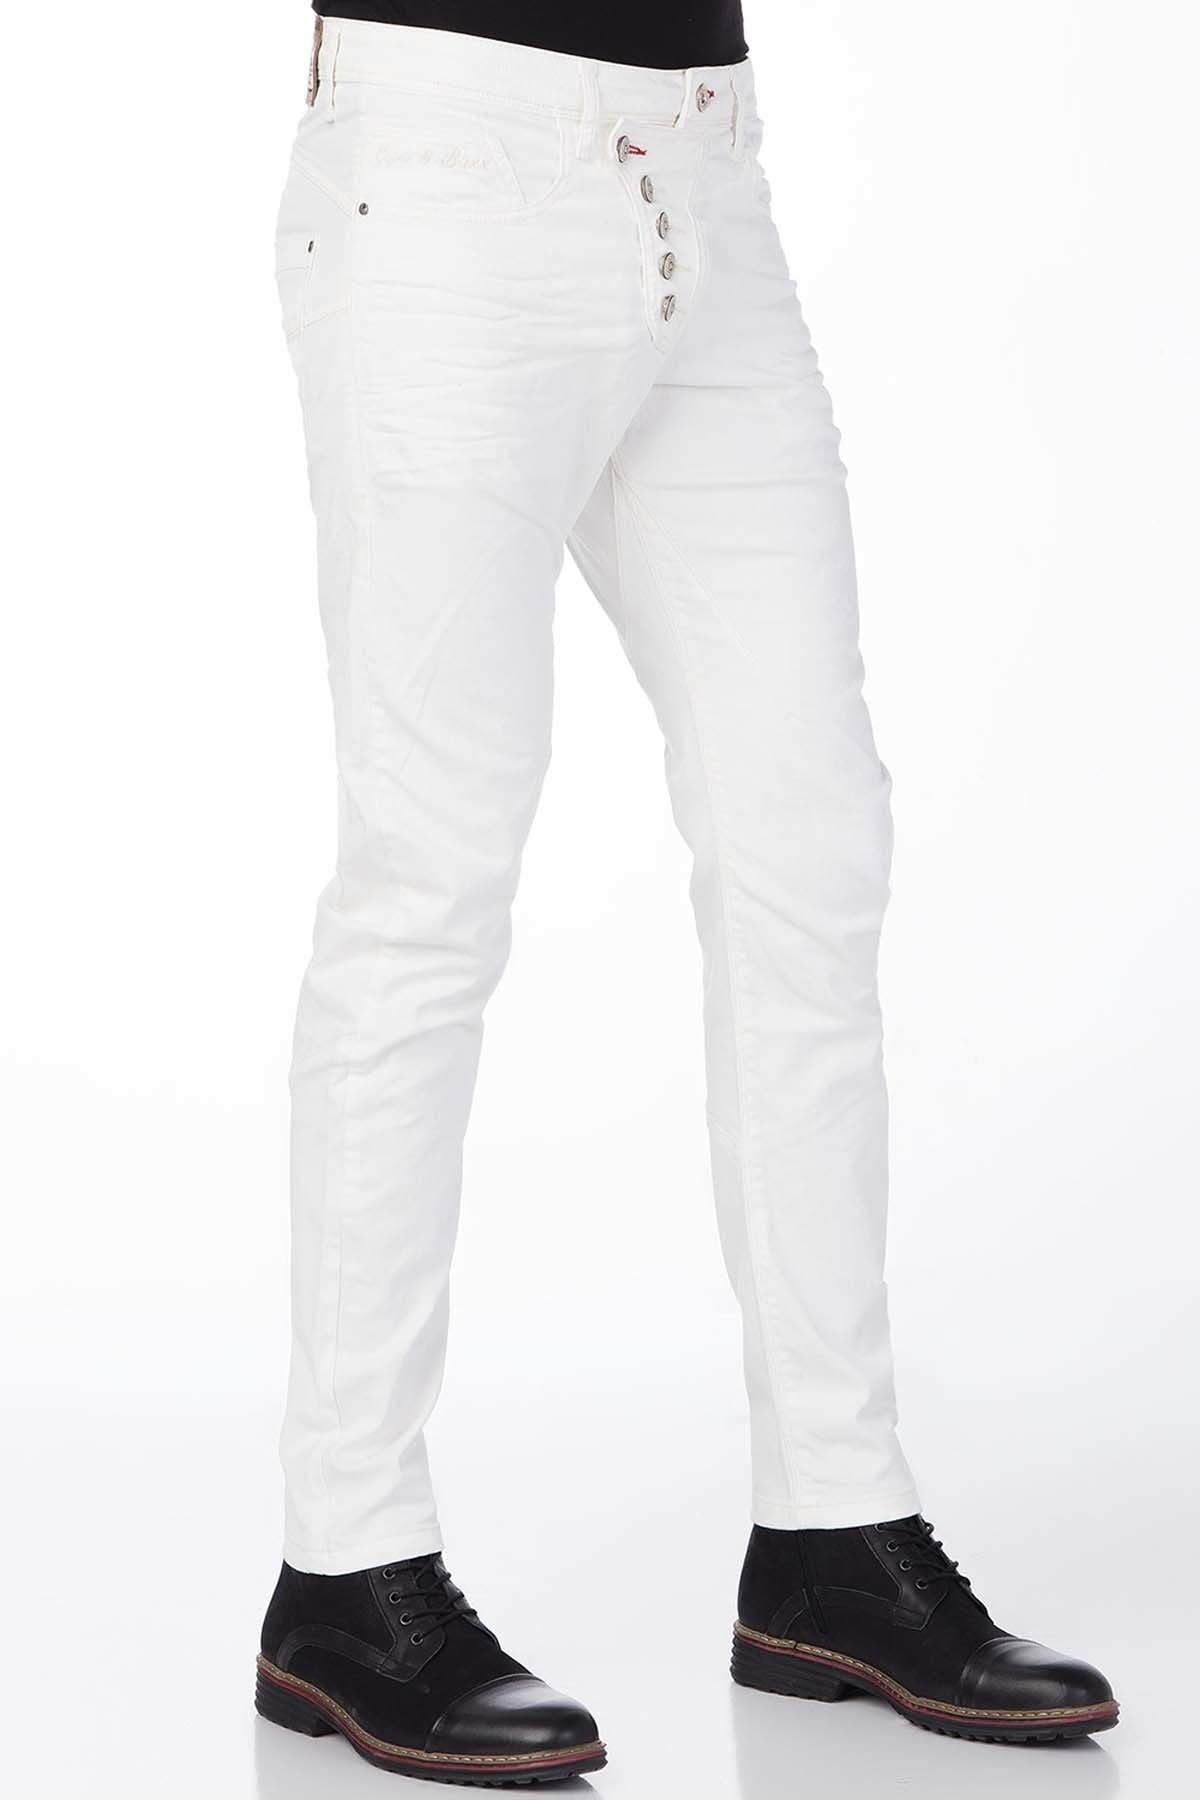 CD251 Comfortabele Heren Jeans in een moderne Look